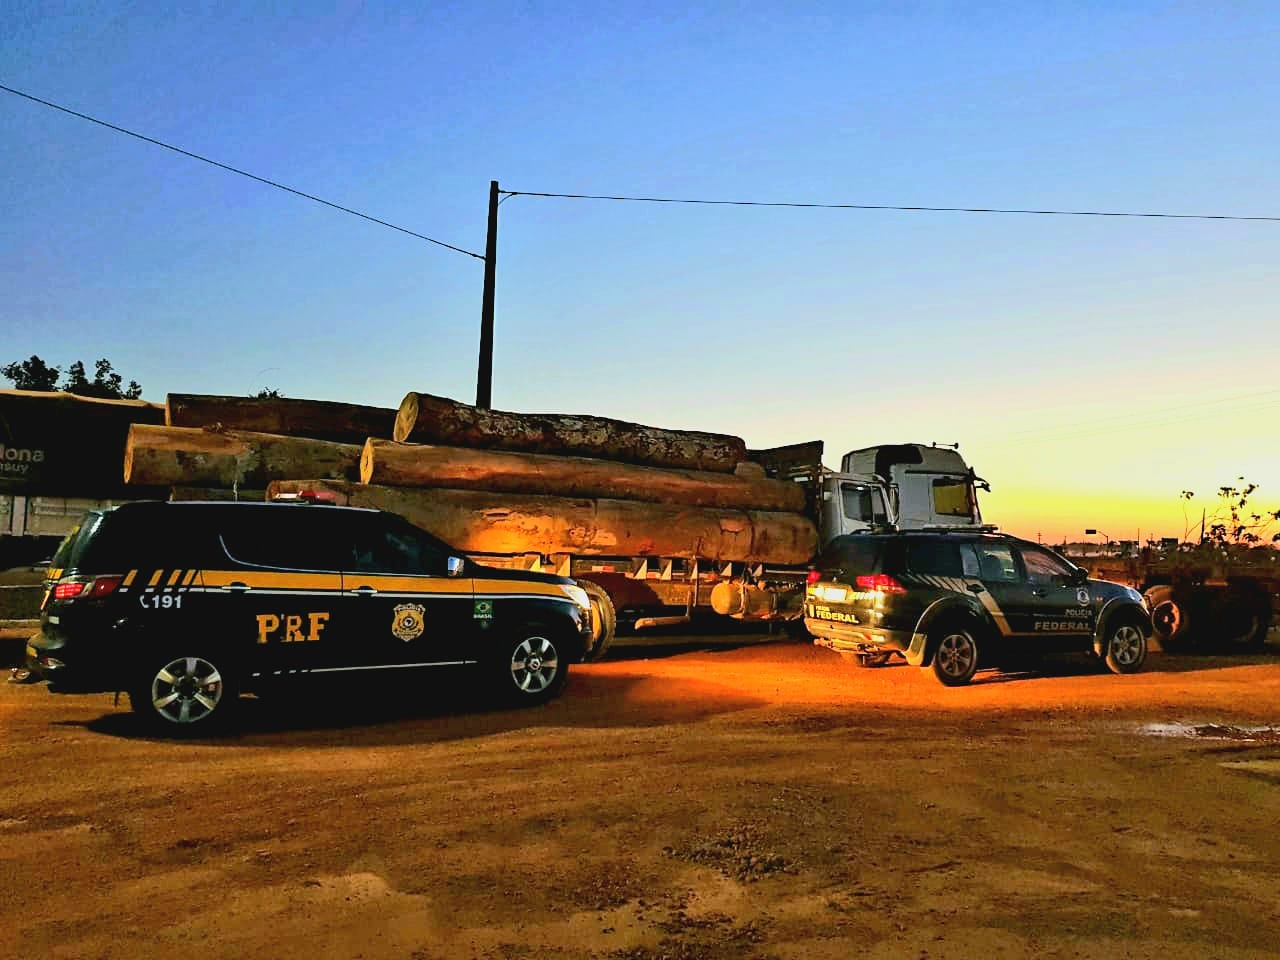 Em Humaitá, PRF, PF e PMAM realizam atividade integrada de enfrentamento ao transporte irregular de madeira - News Rondônia